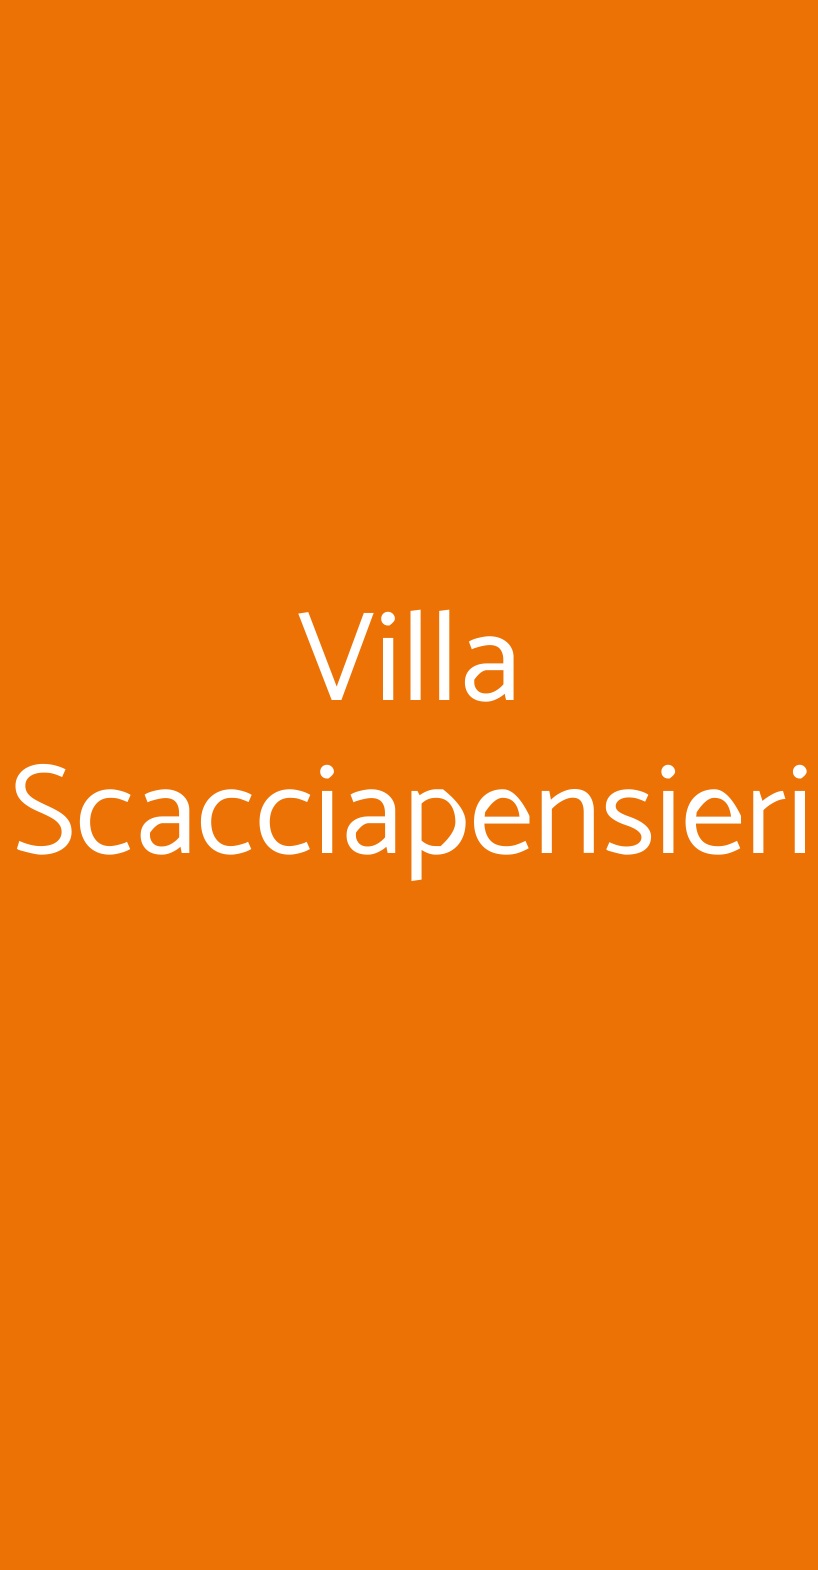 Villa Scacciapensieri Siena menù 1 pagina